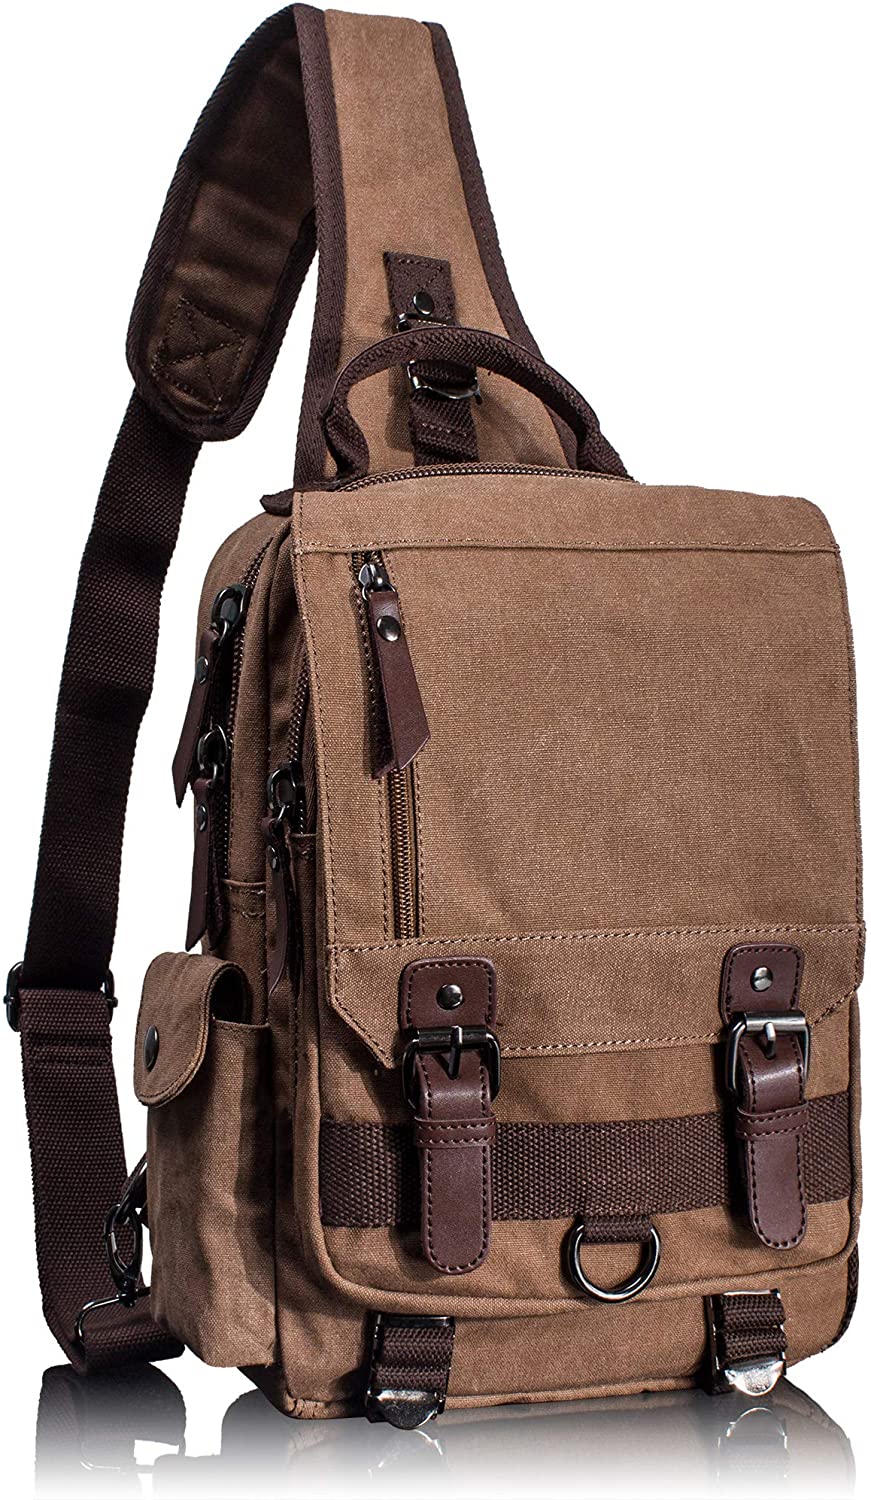 Leaper Canvas Messenger Bag Sling Bag Cross Body Bag Shoulder Bag Black, L